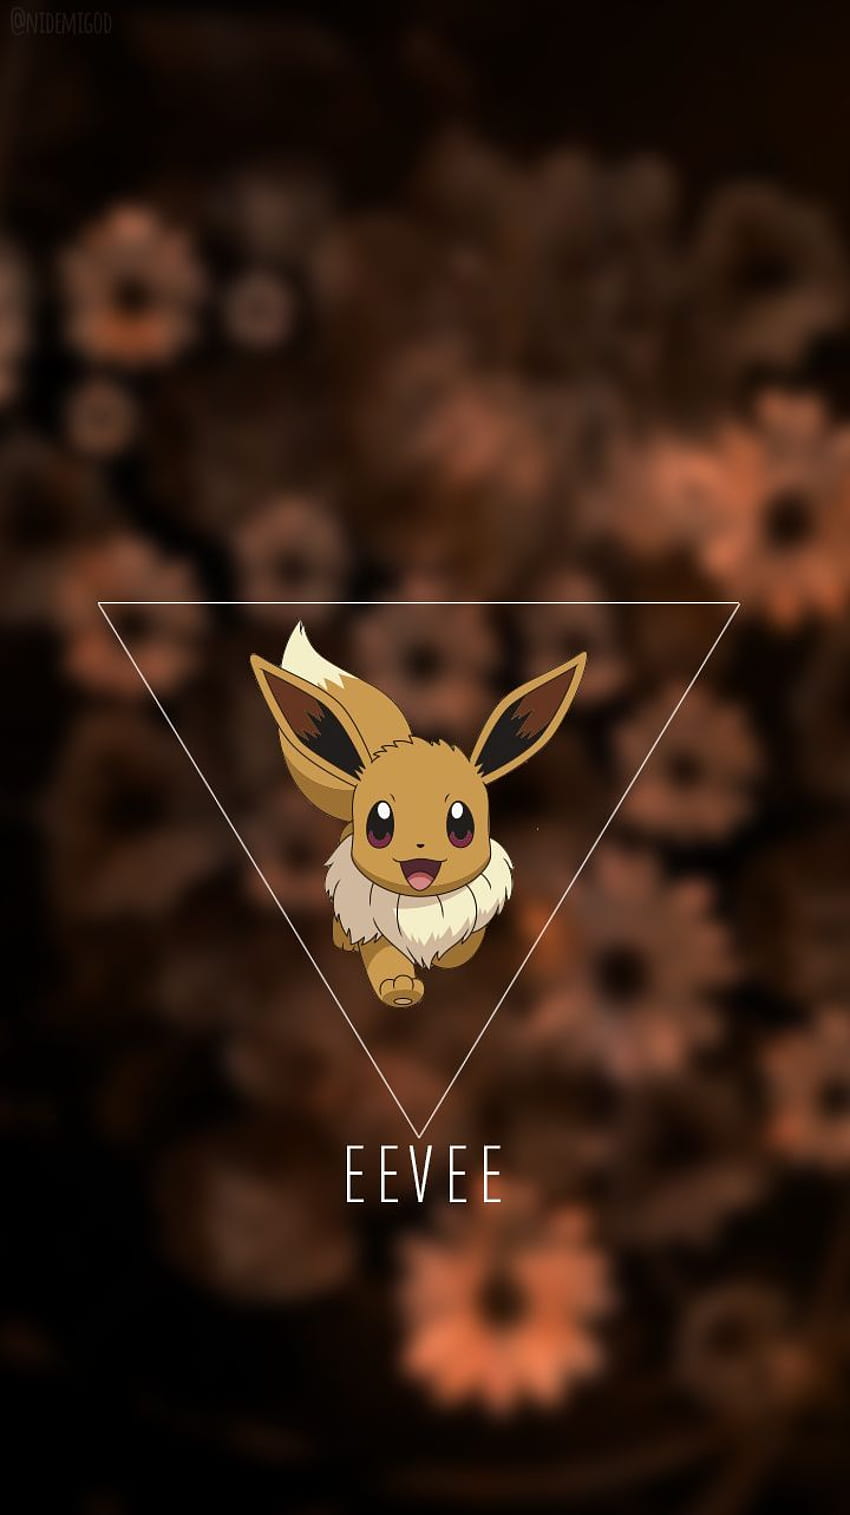 Eevee Pokemon Character iPhone 6 HD Wallpaper 